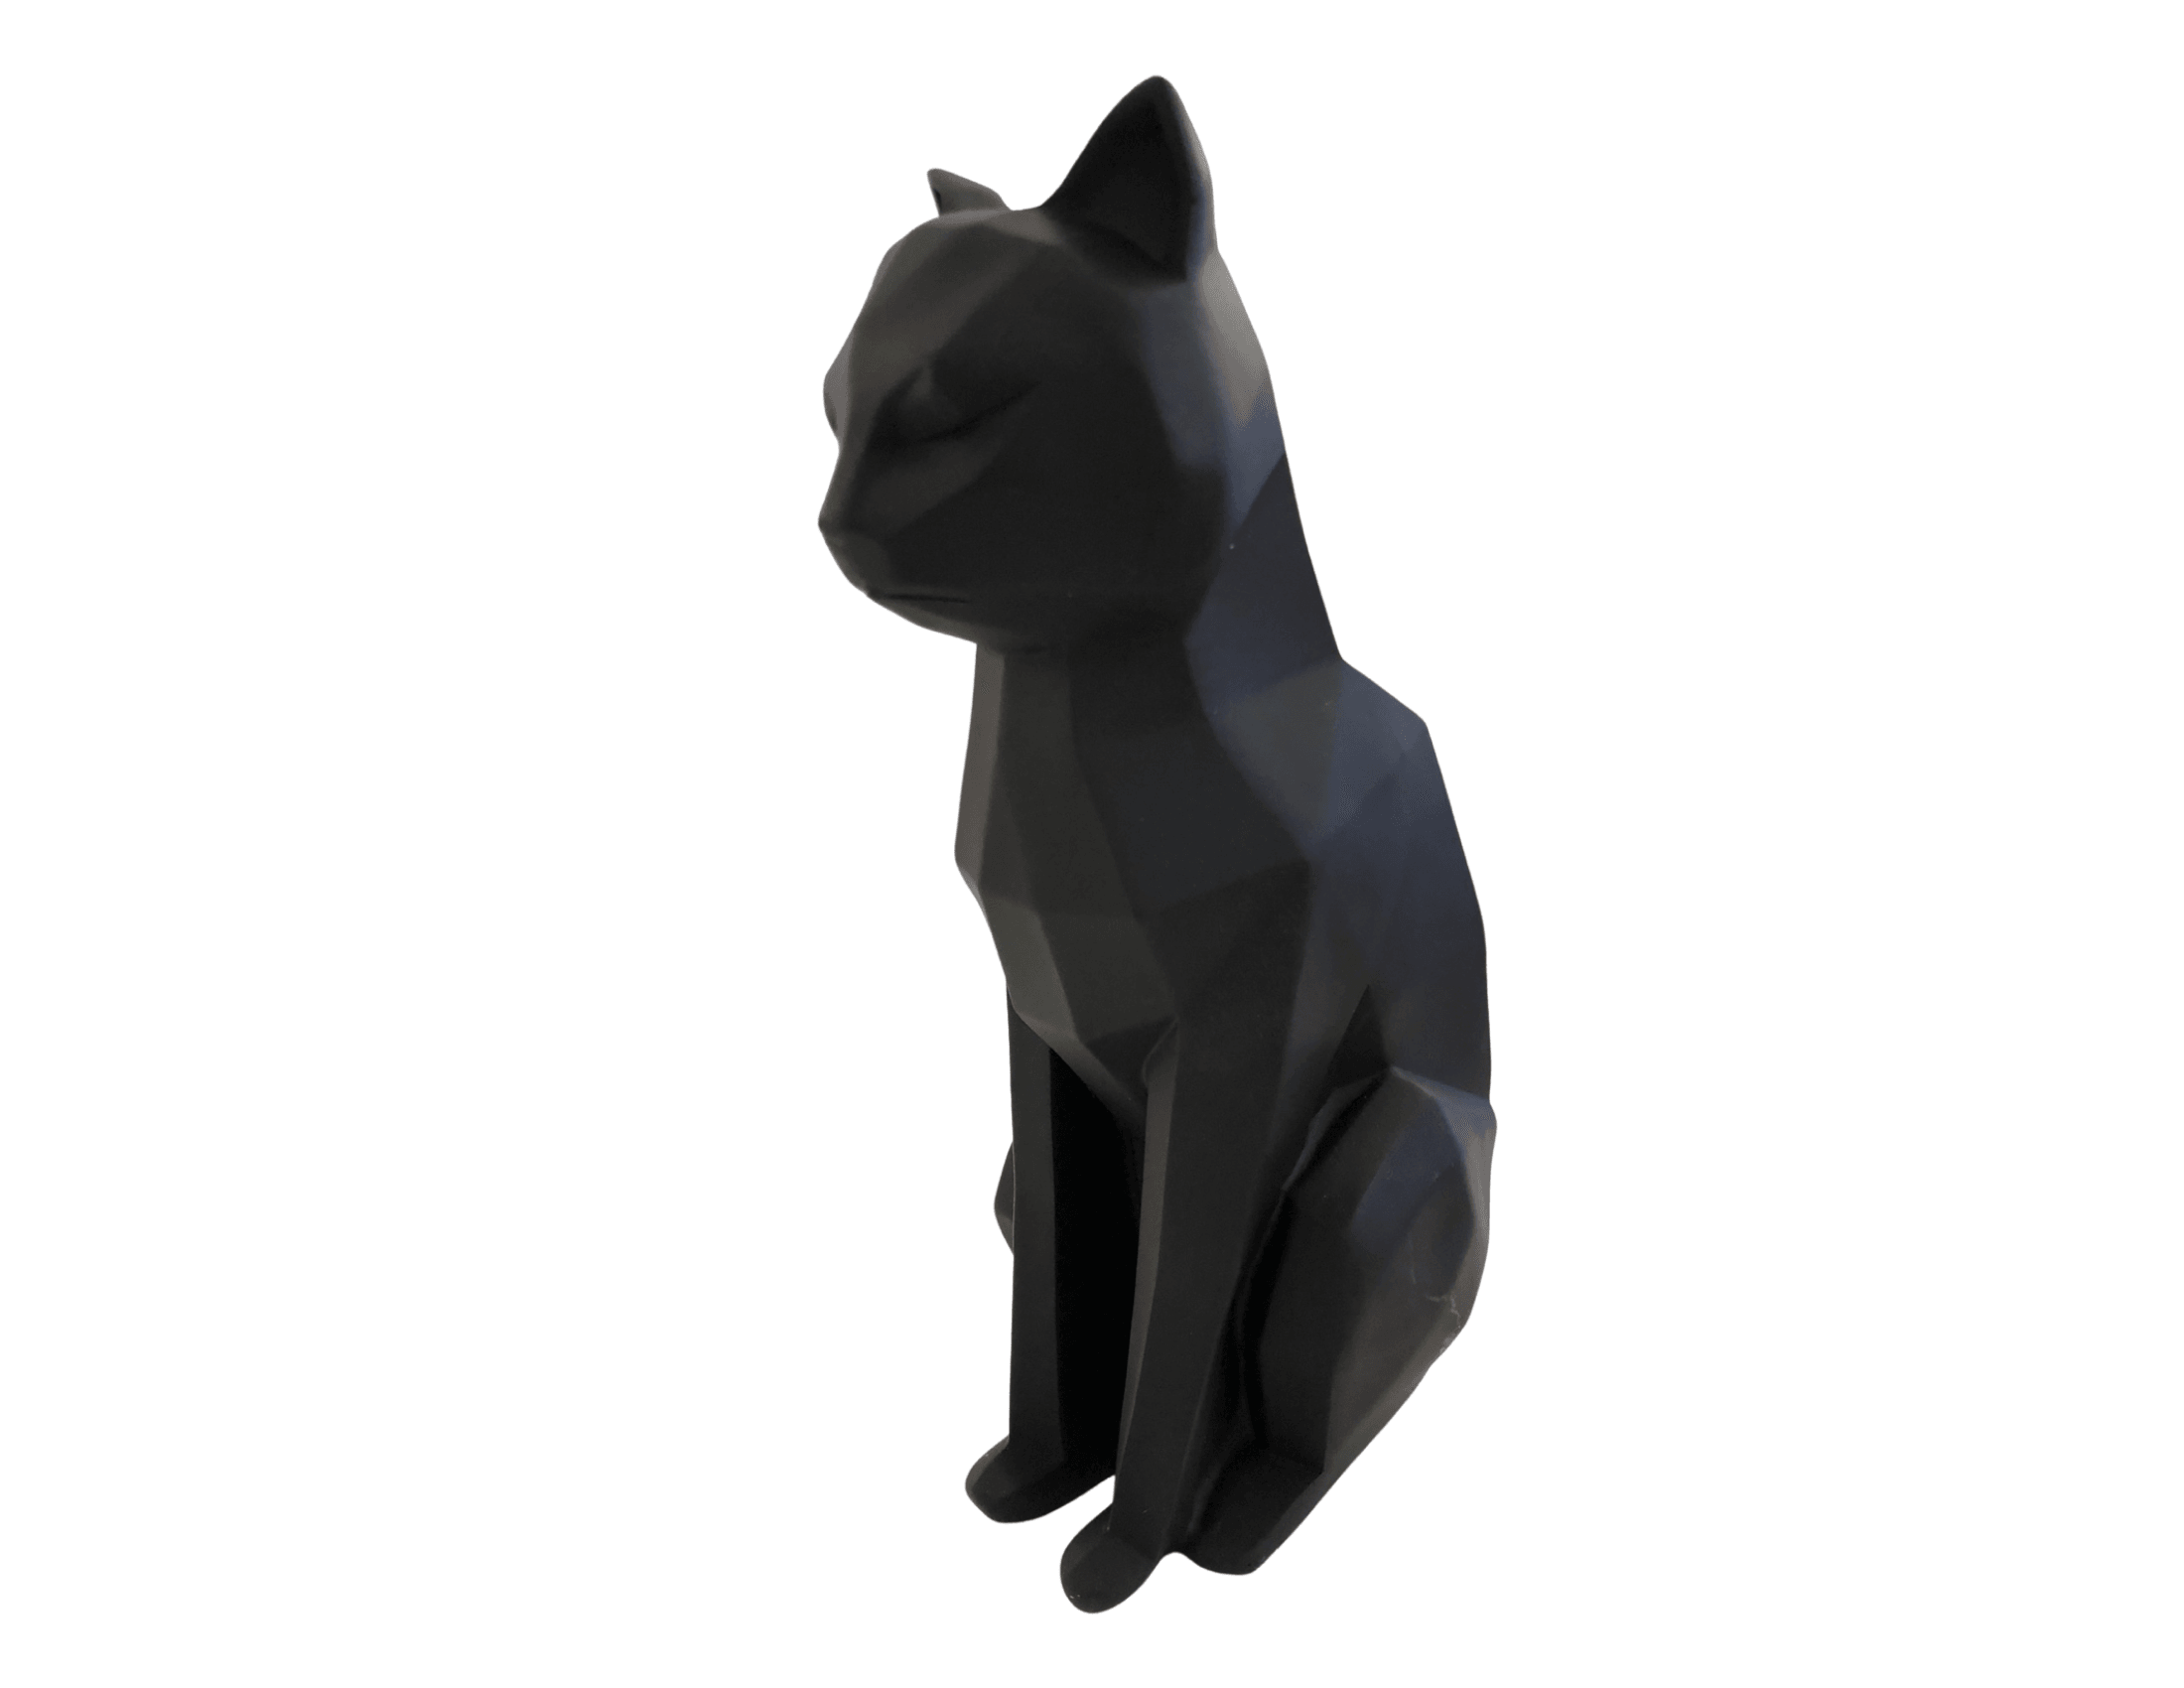 Objekt | Katze | Origami Look | Kunststoff | schwarz - Roo's Gift Shop